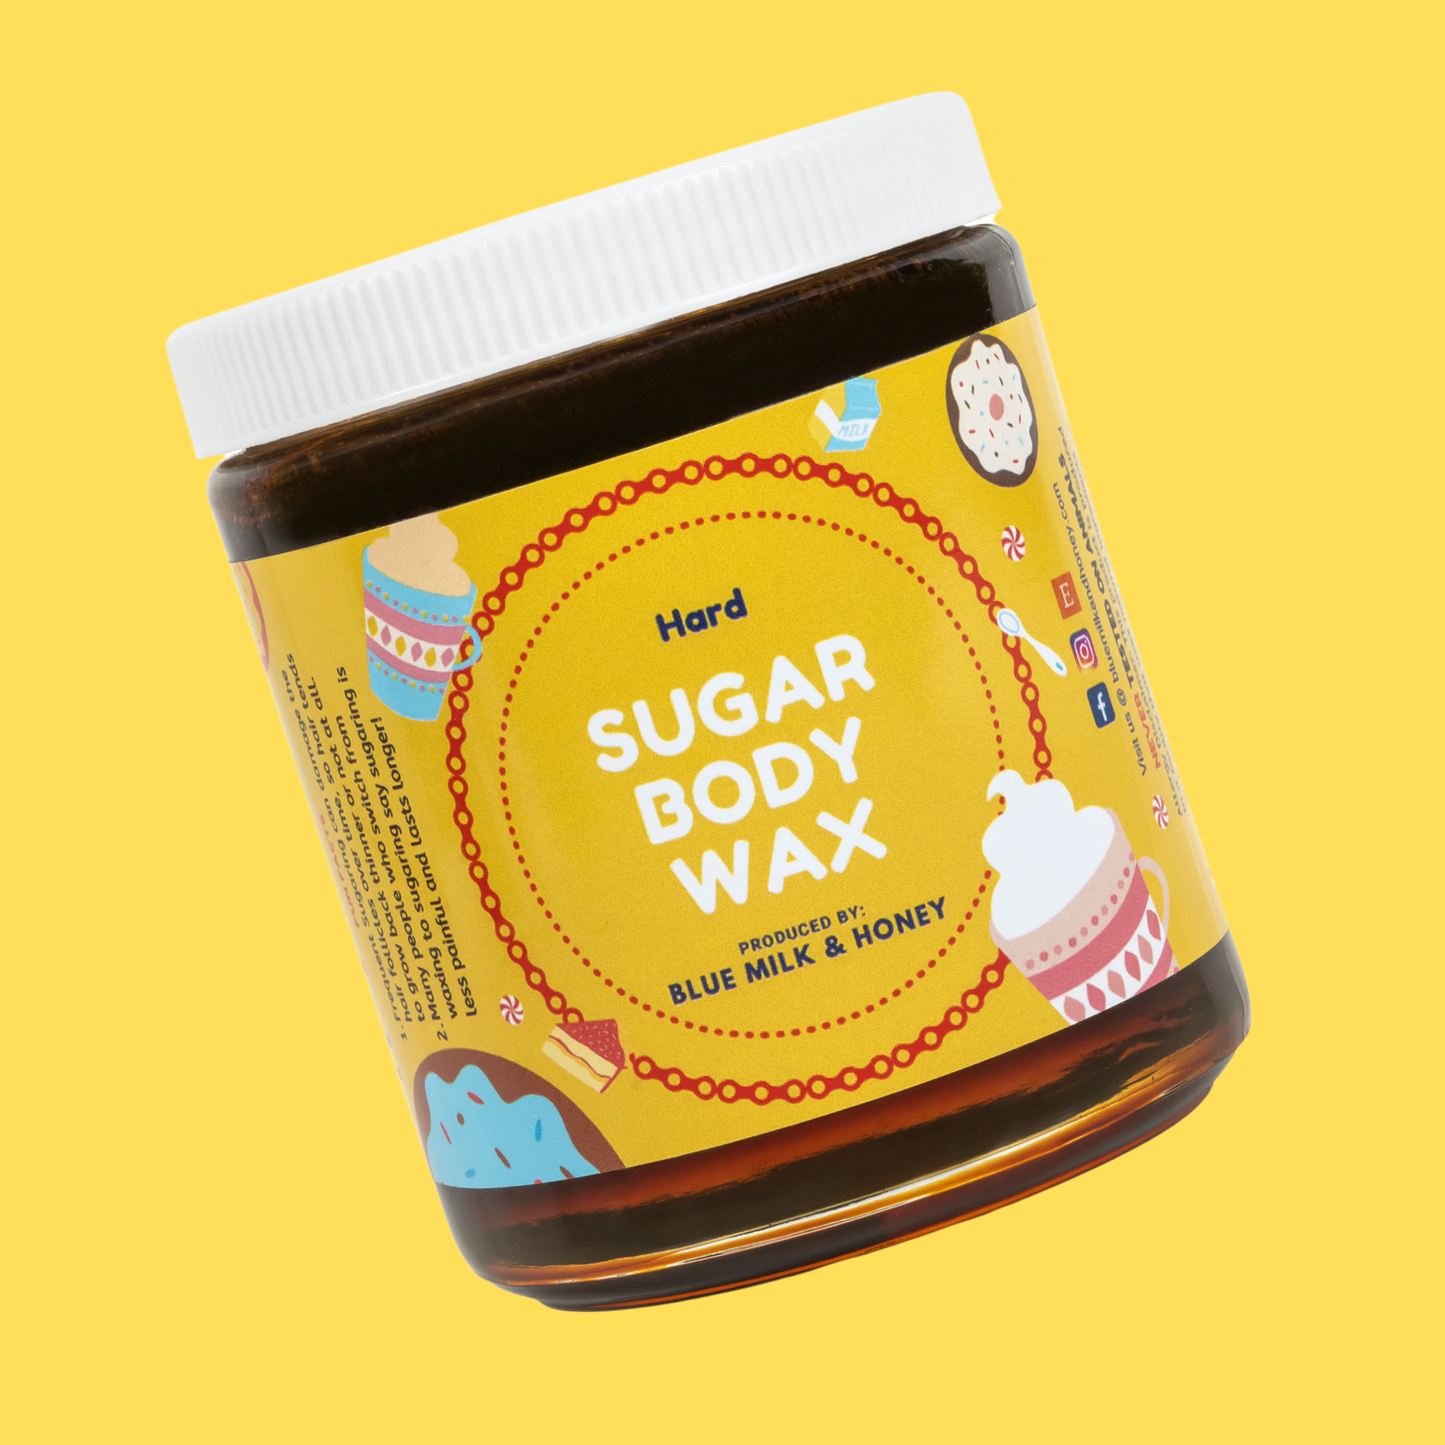 8oz Brazilian Hard Sugar Wax